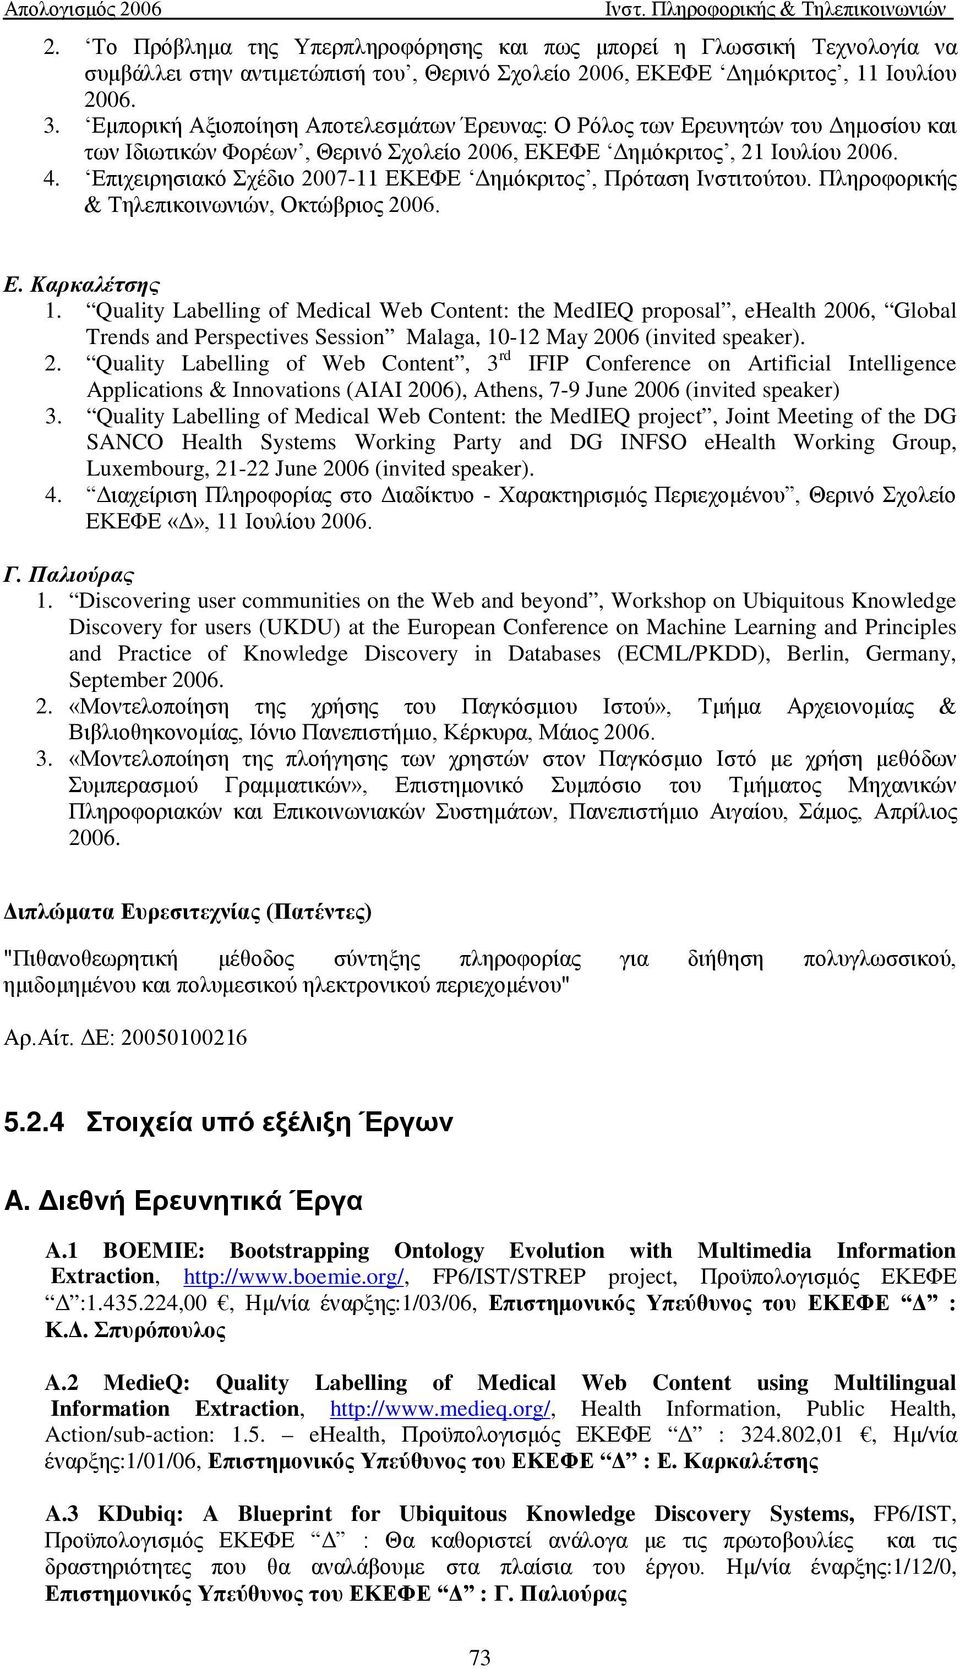 Επιχειρησιακό Σχέδιο 2007-11 ΕΚΕΦΕ Δημόκριτος, Πρόταση Ινστιτούτου. Πληροφορικής & Τηλεπικοινωνιών, Οκτώβριος 2006. Ε. Καρκαλέτσης 1.